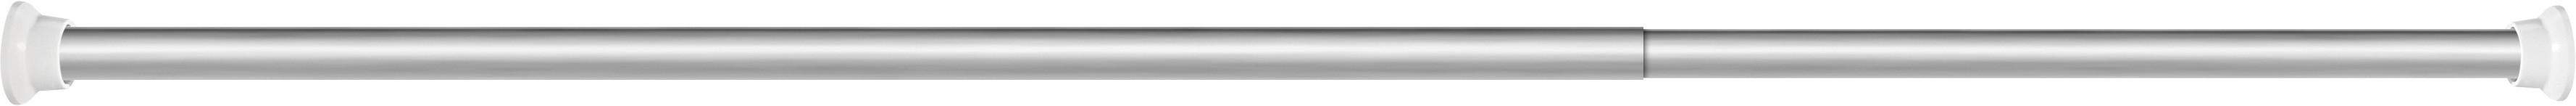 Duschvorhangstange Renate in Silber ca. 125-220cm - Silberfarben, Metall (125-220cmcm)